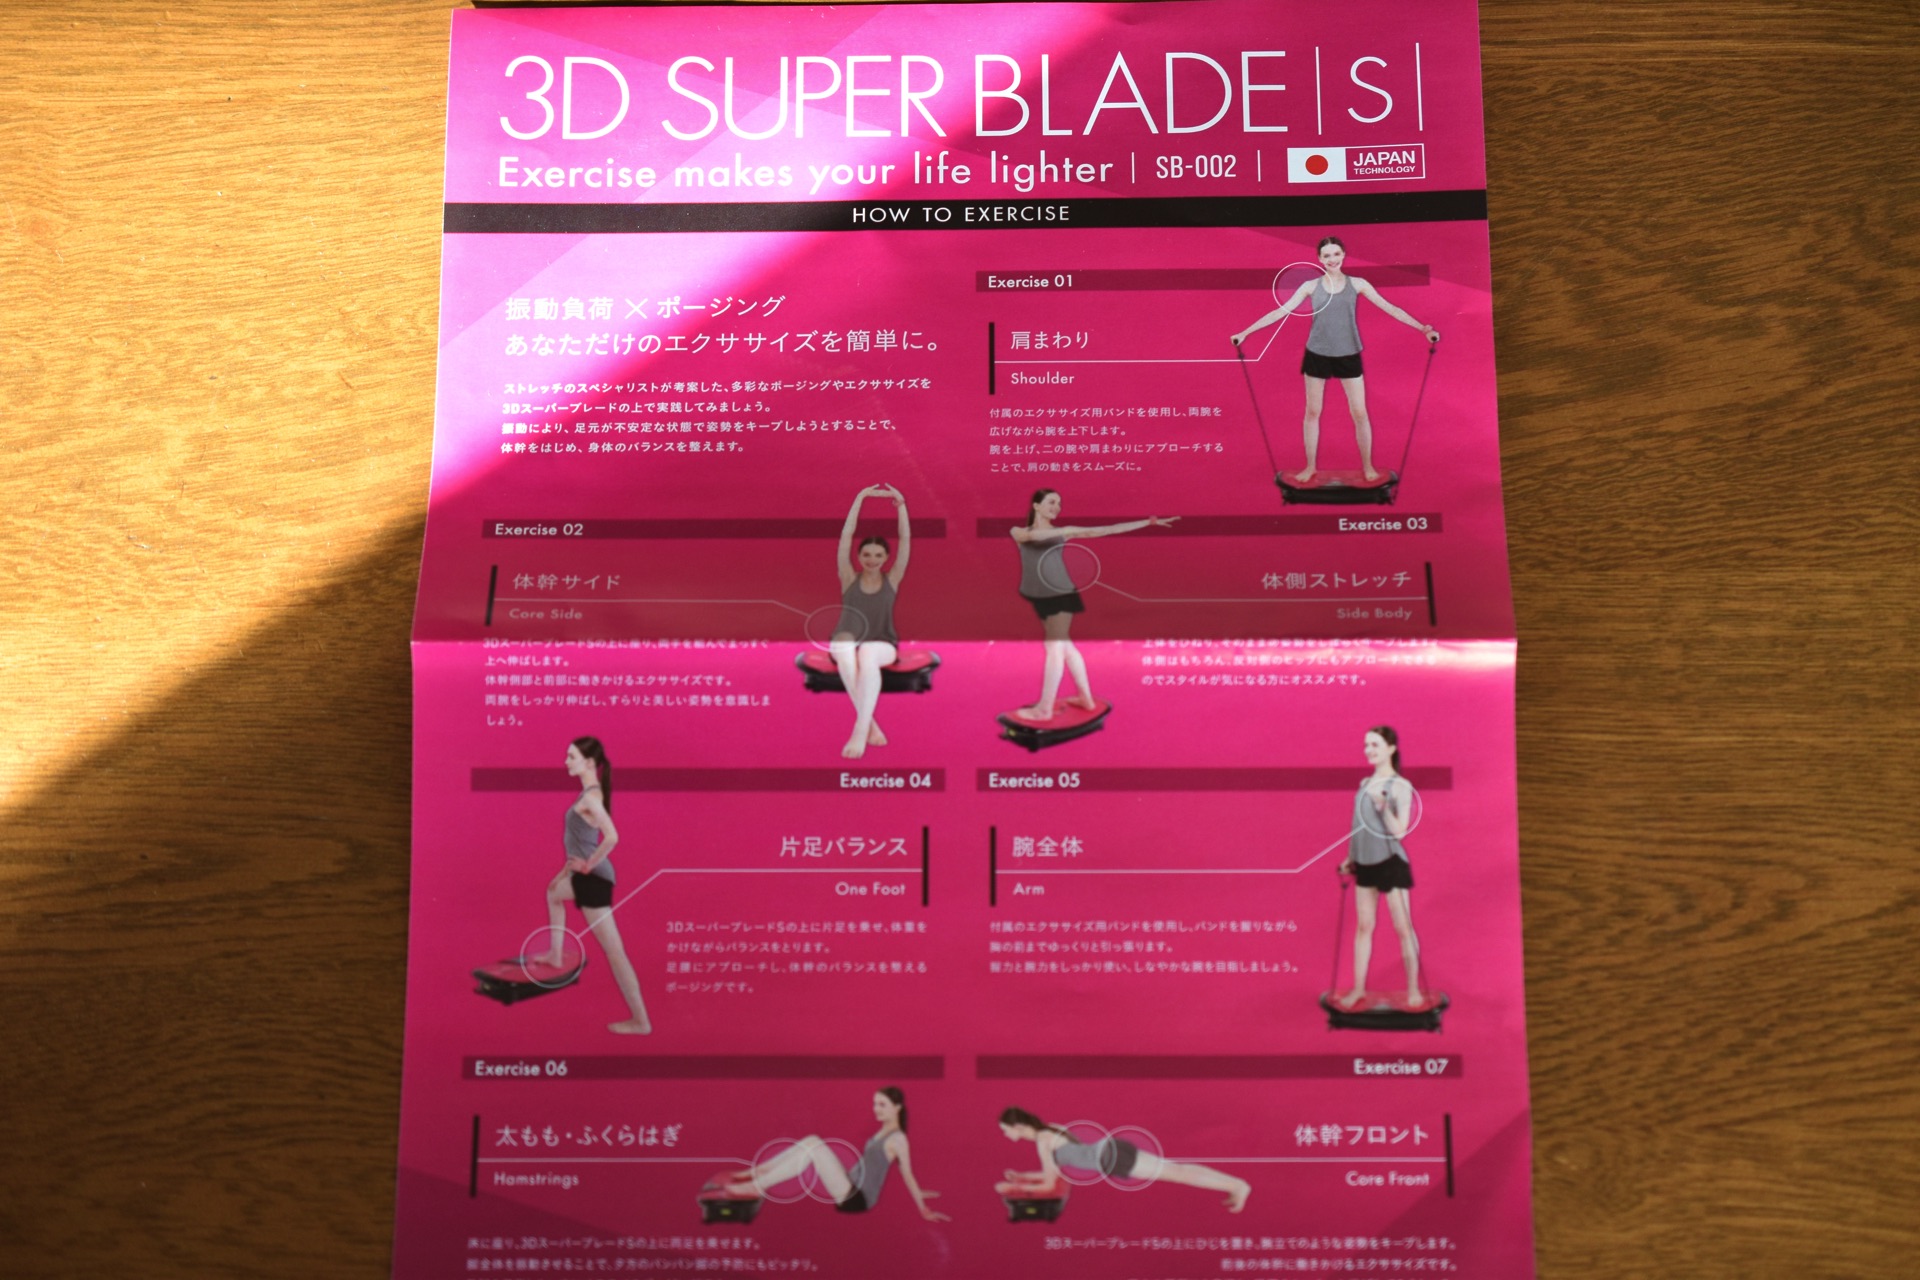 ドクターエアの3DスーパーブレードS。試してみたら結構すごい！ - モノ好き。ブログ